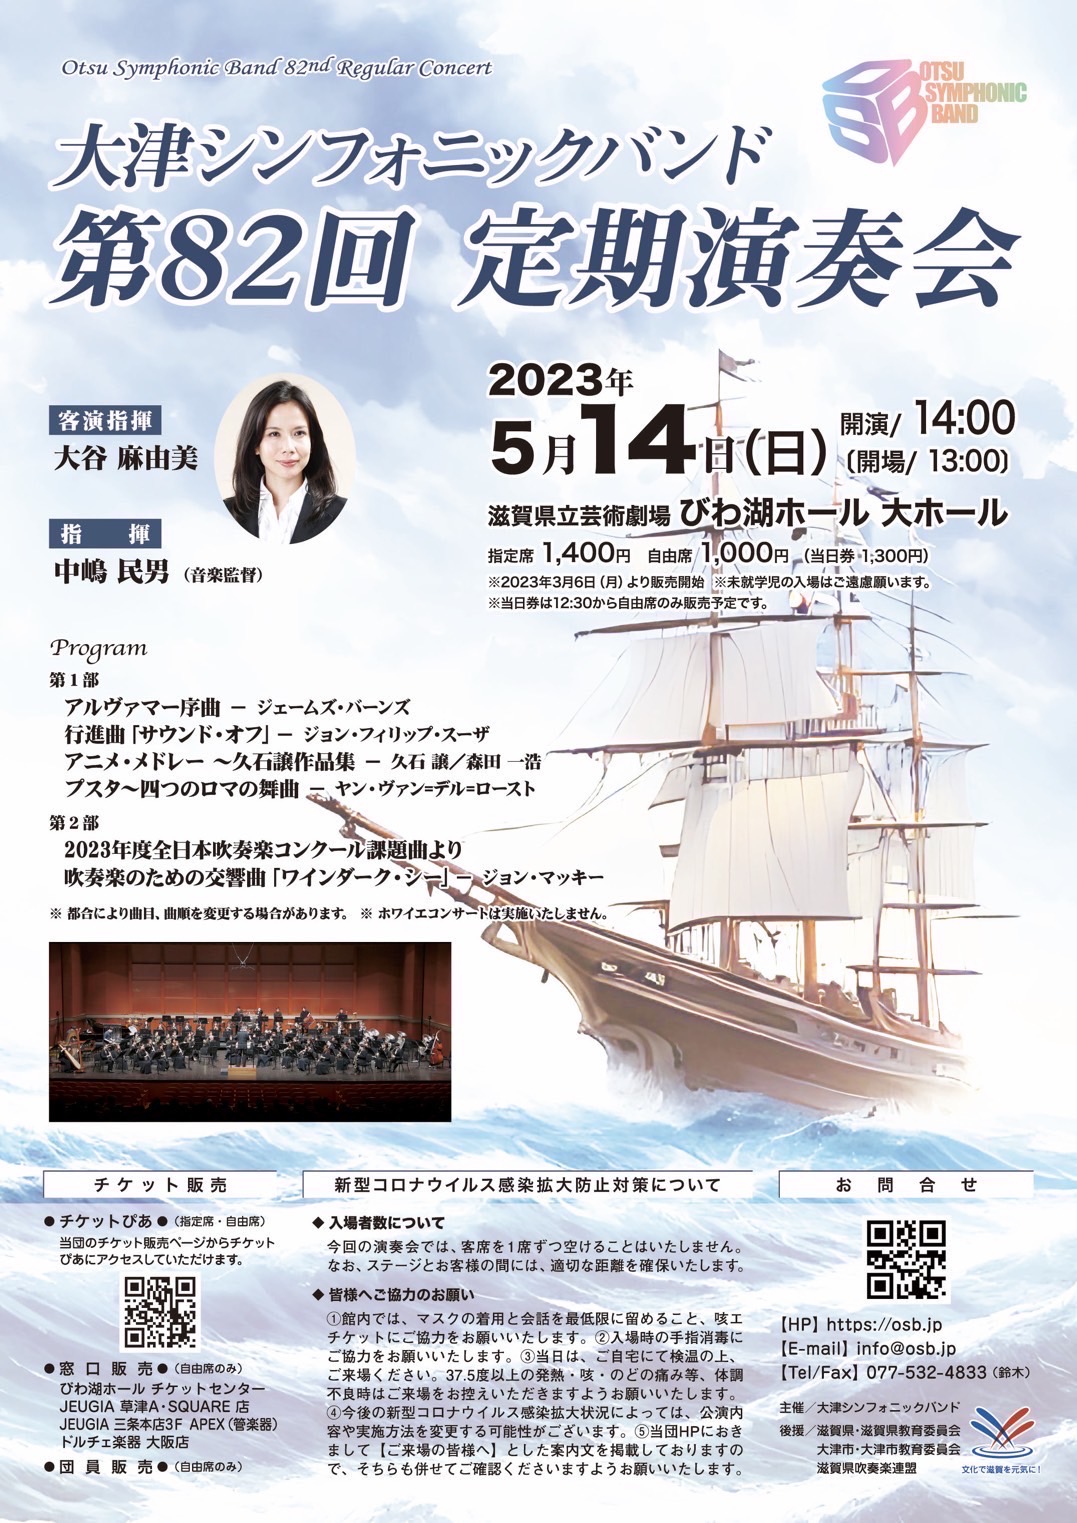 2023年5月14日(日)大津シンフォニックバンド第82回定期演奏会